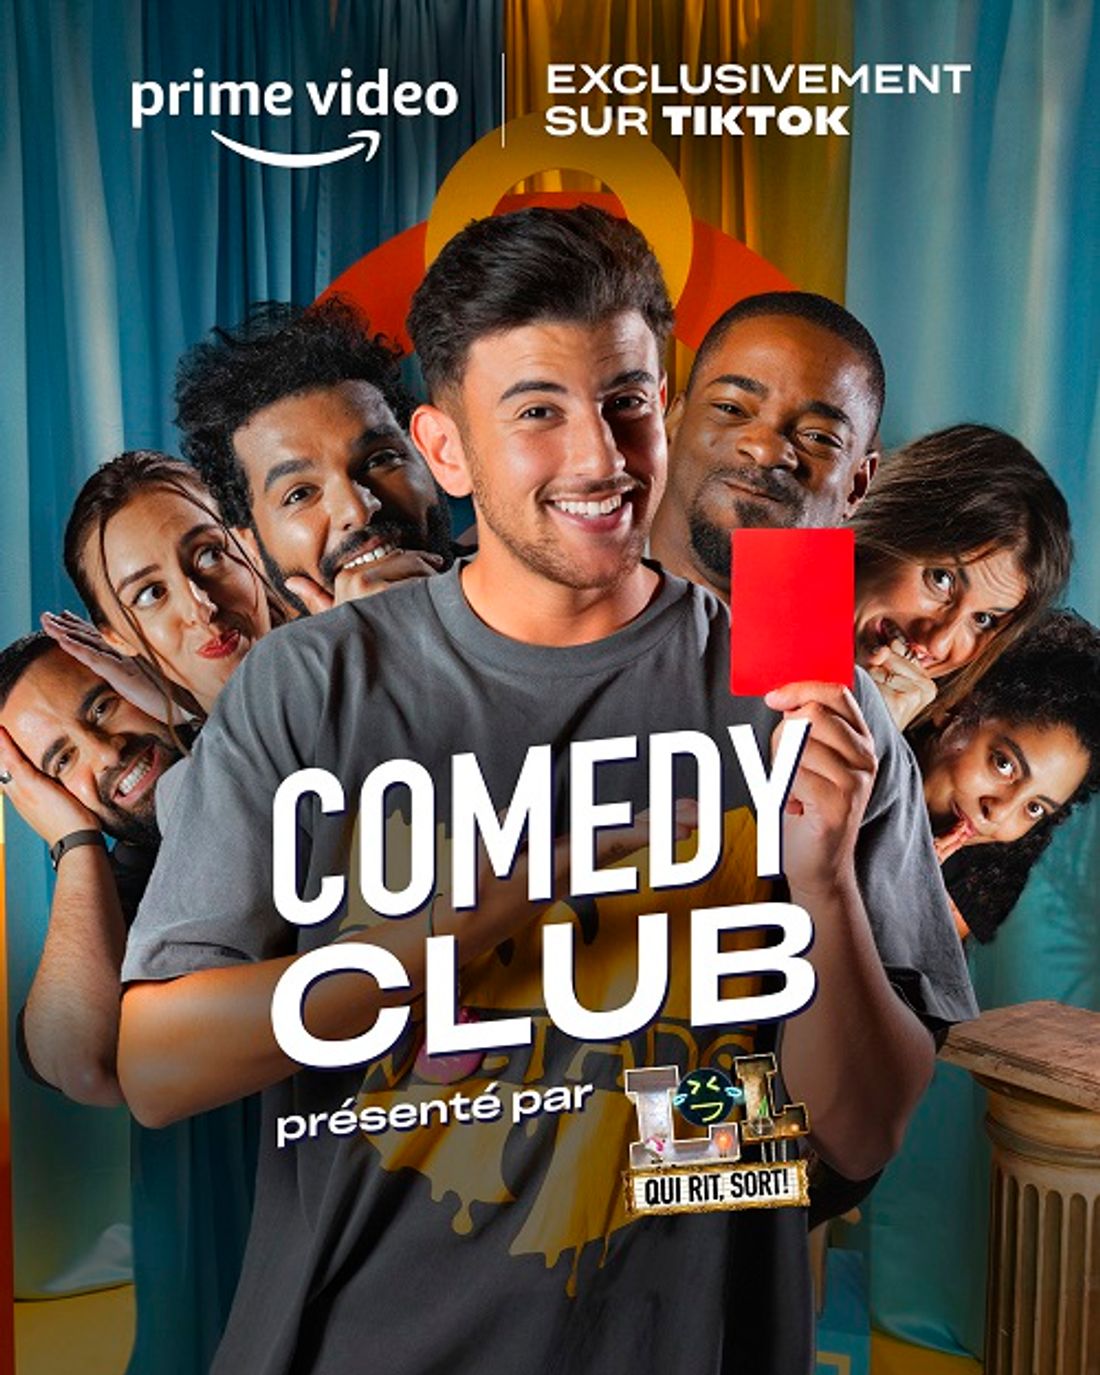 Comedy Club, présenté par "Lol, qui rit sort "